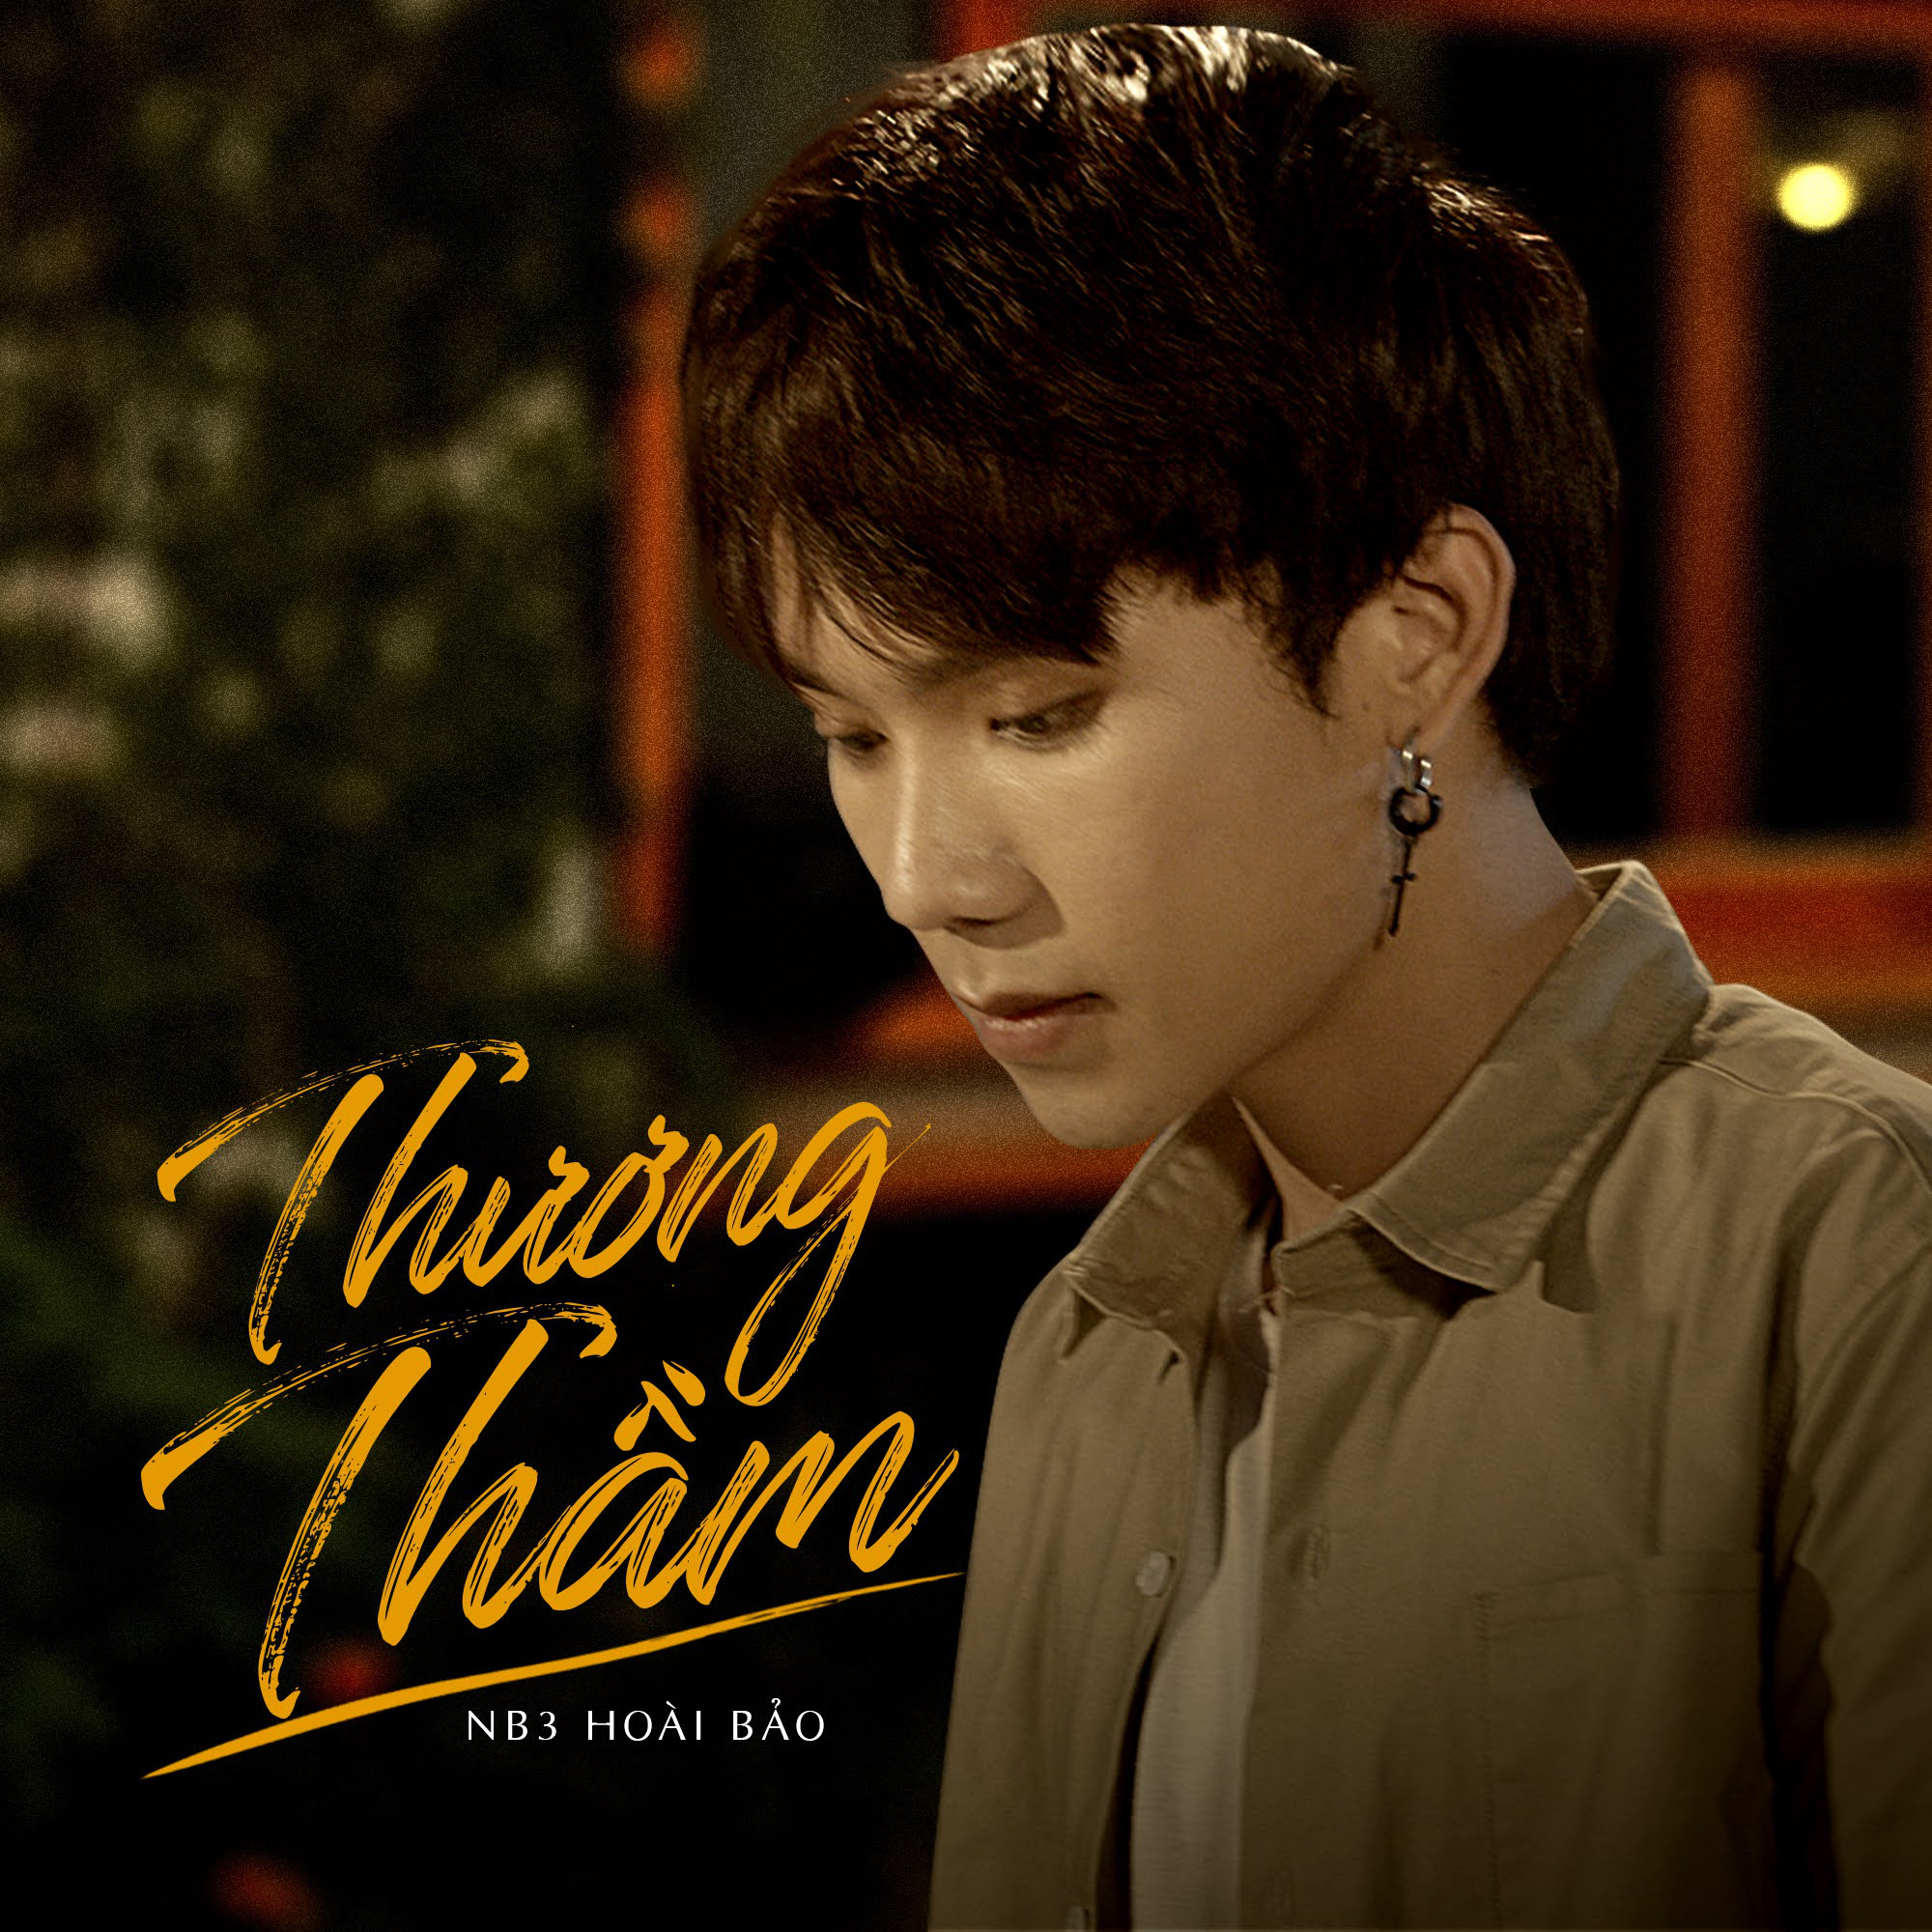 Công ty truyền thông đứng sau hàng trăm bản hit của nghệ sĩ Việt - Ảnh 4.